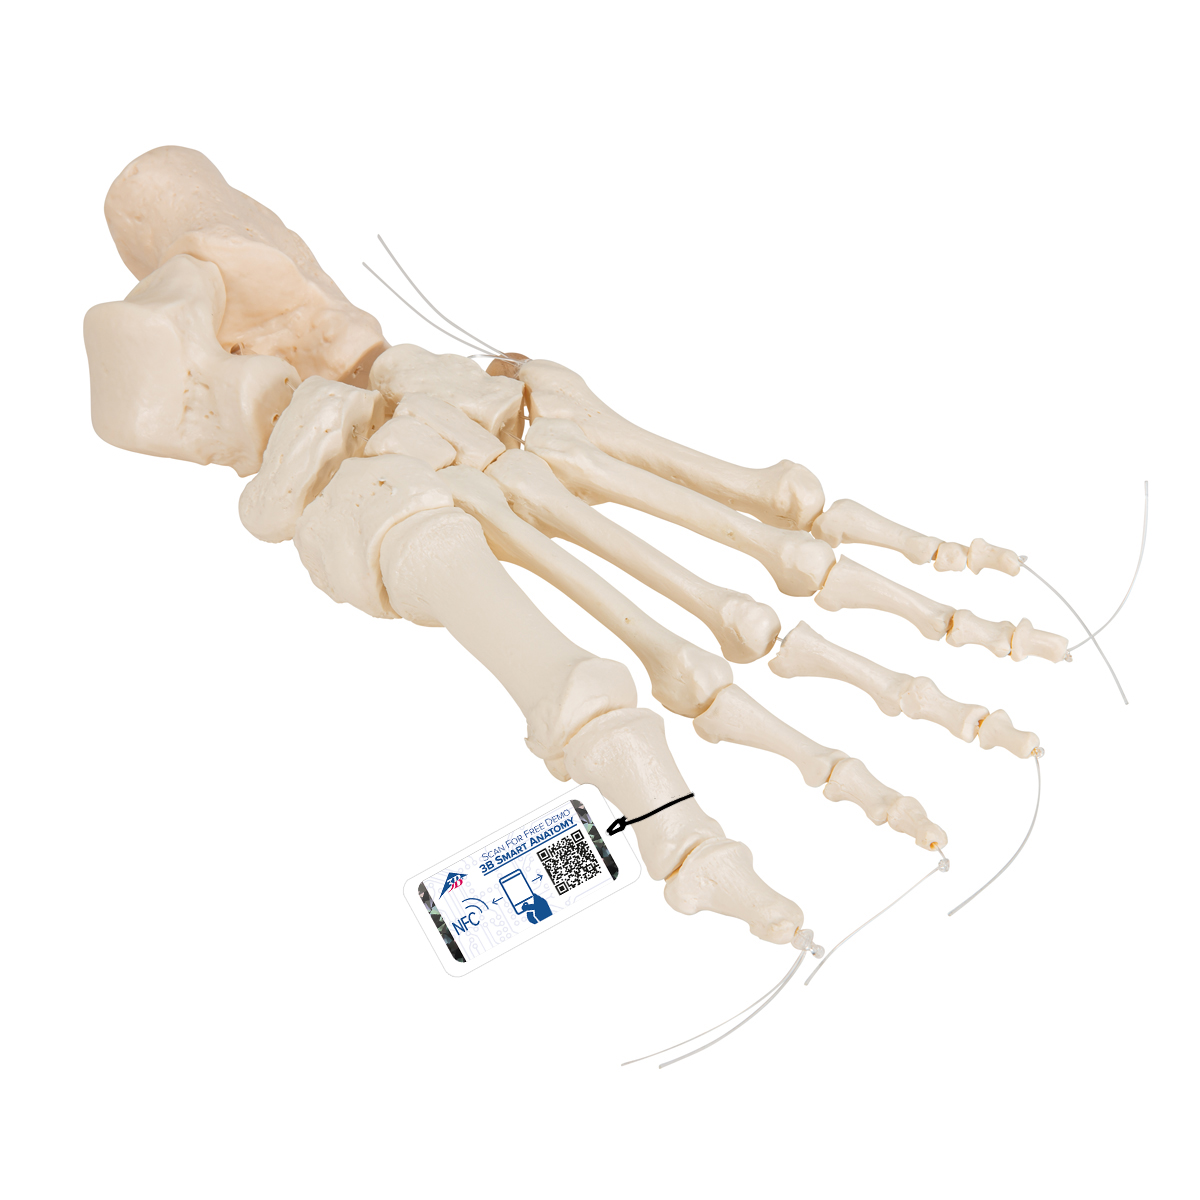 Fußskelett Model, lose auf Nylon gezogen - 3B Smart Anatomy, Bestellnummer 1019356, A30/2, 3B Scientific